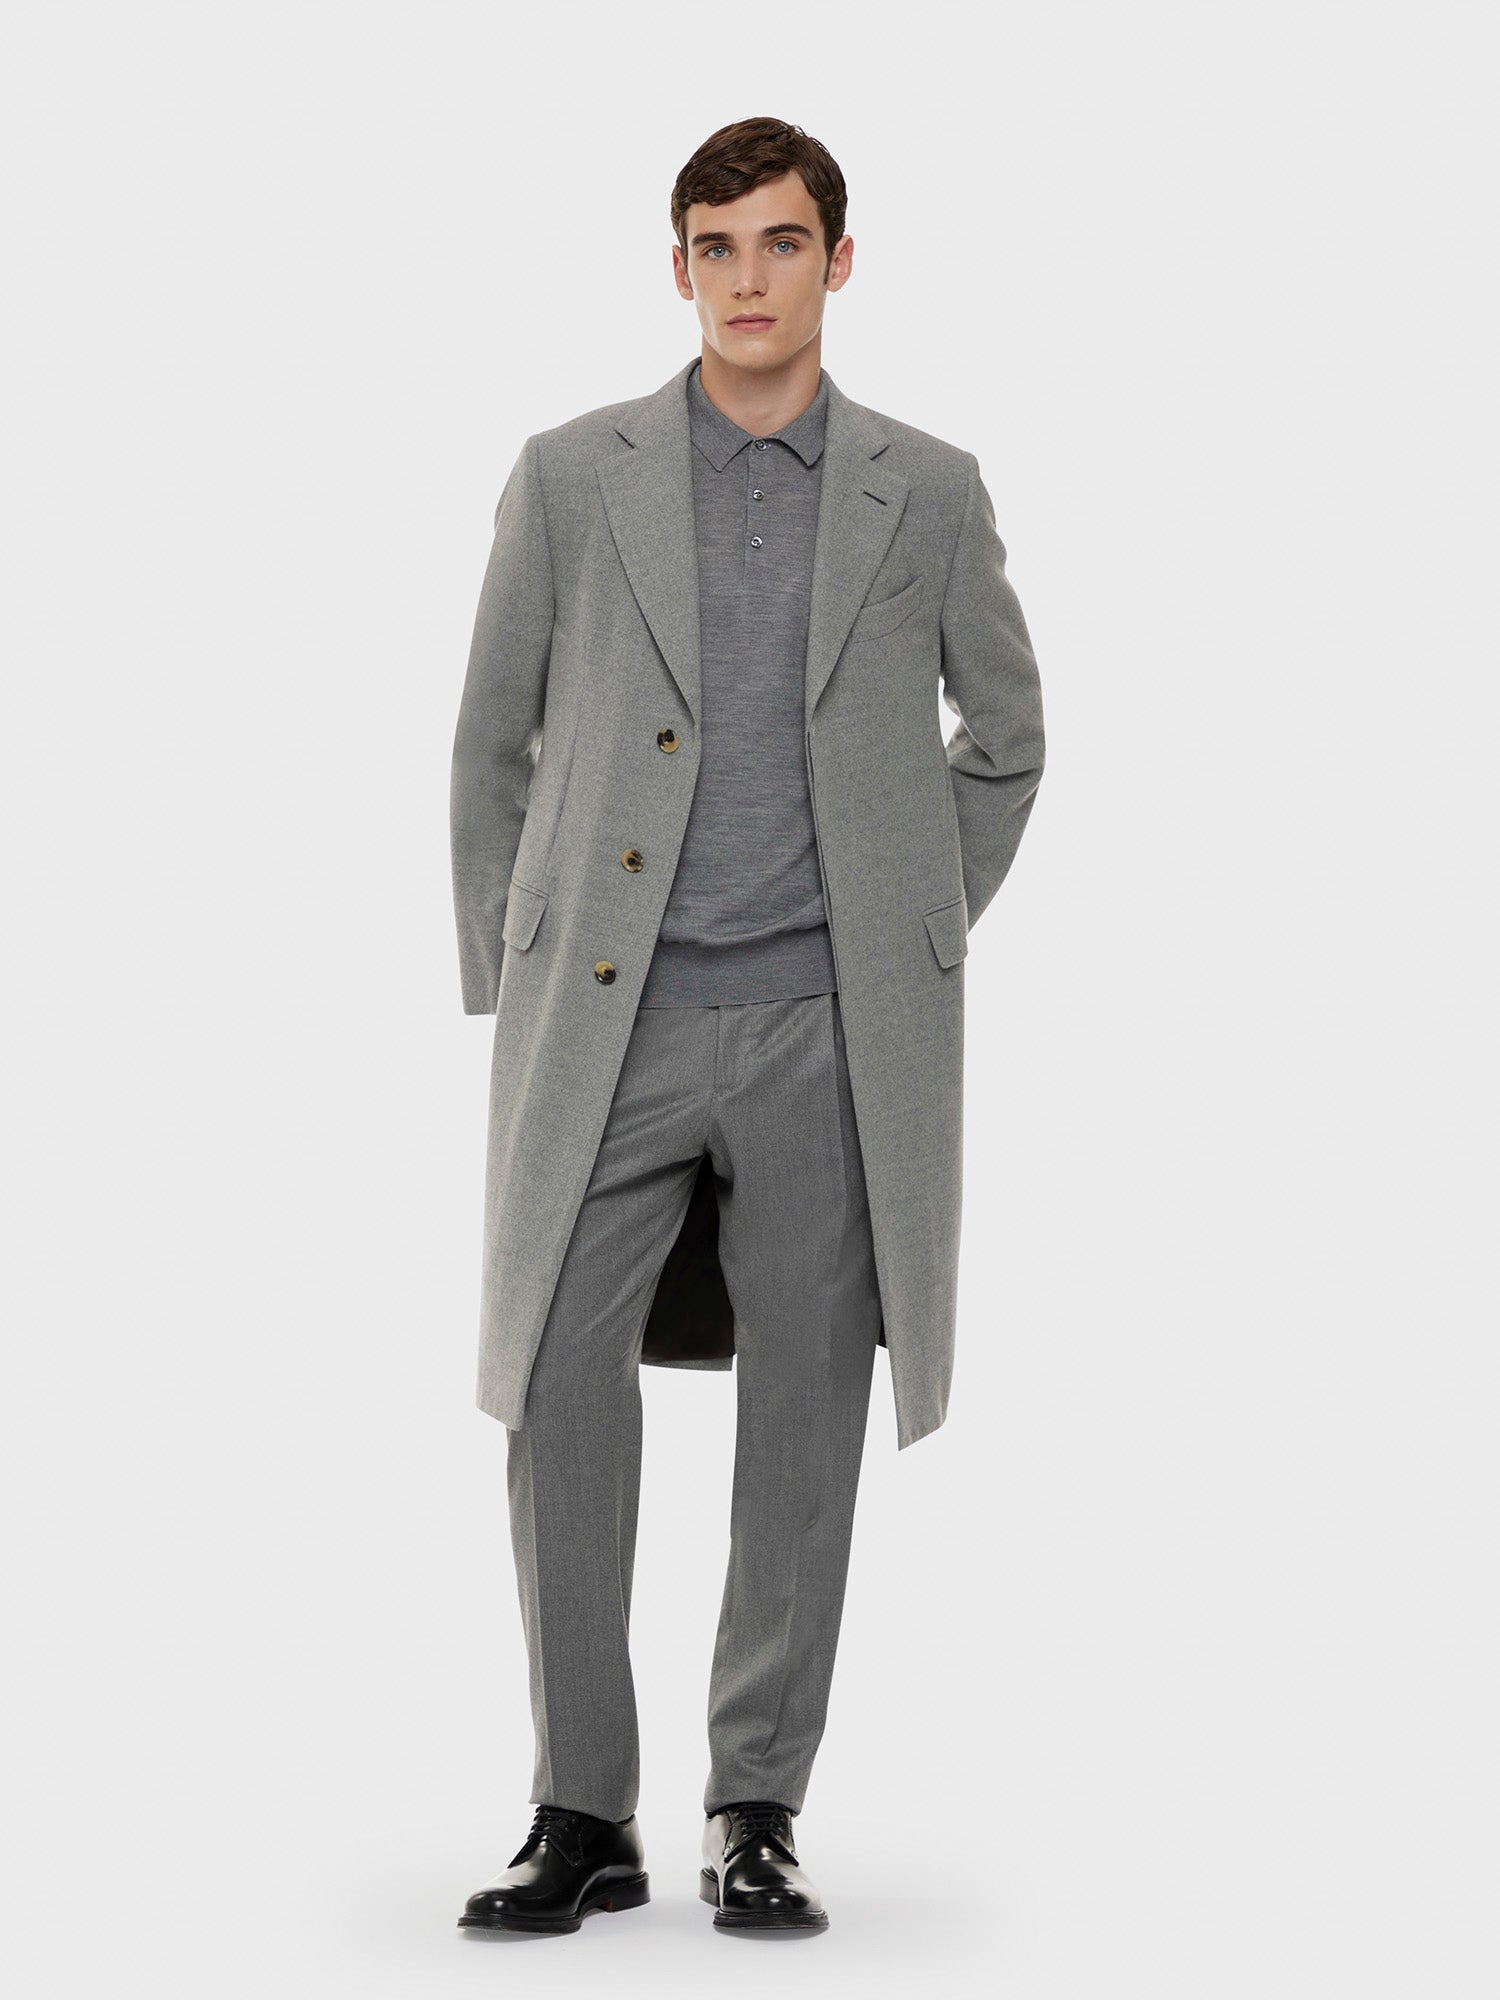 Caruso Menswear Abbigliamento Uomo Cappotto norma in lana "Nuage" 180's grigio total look